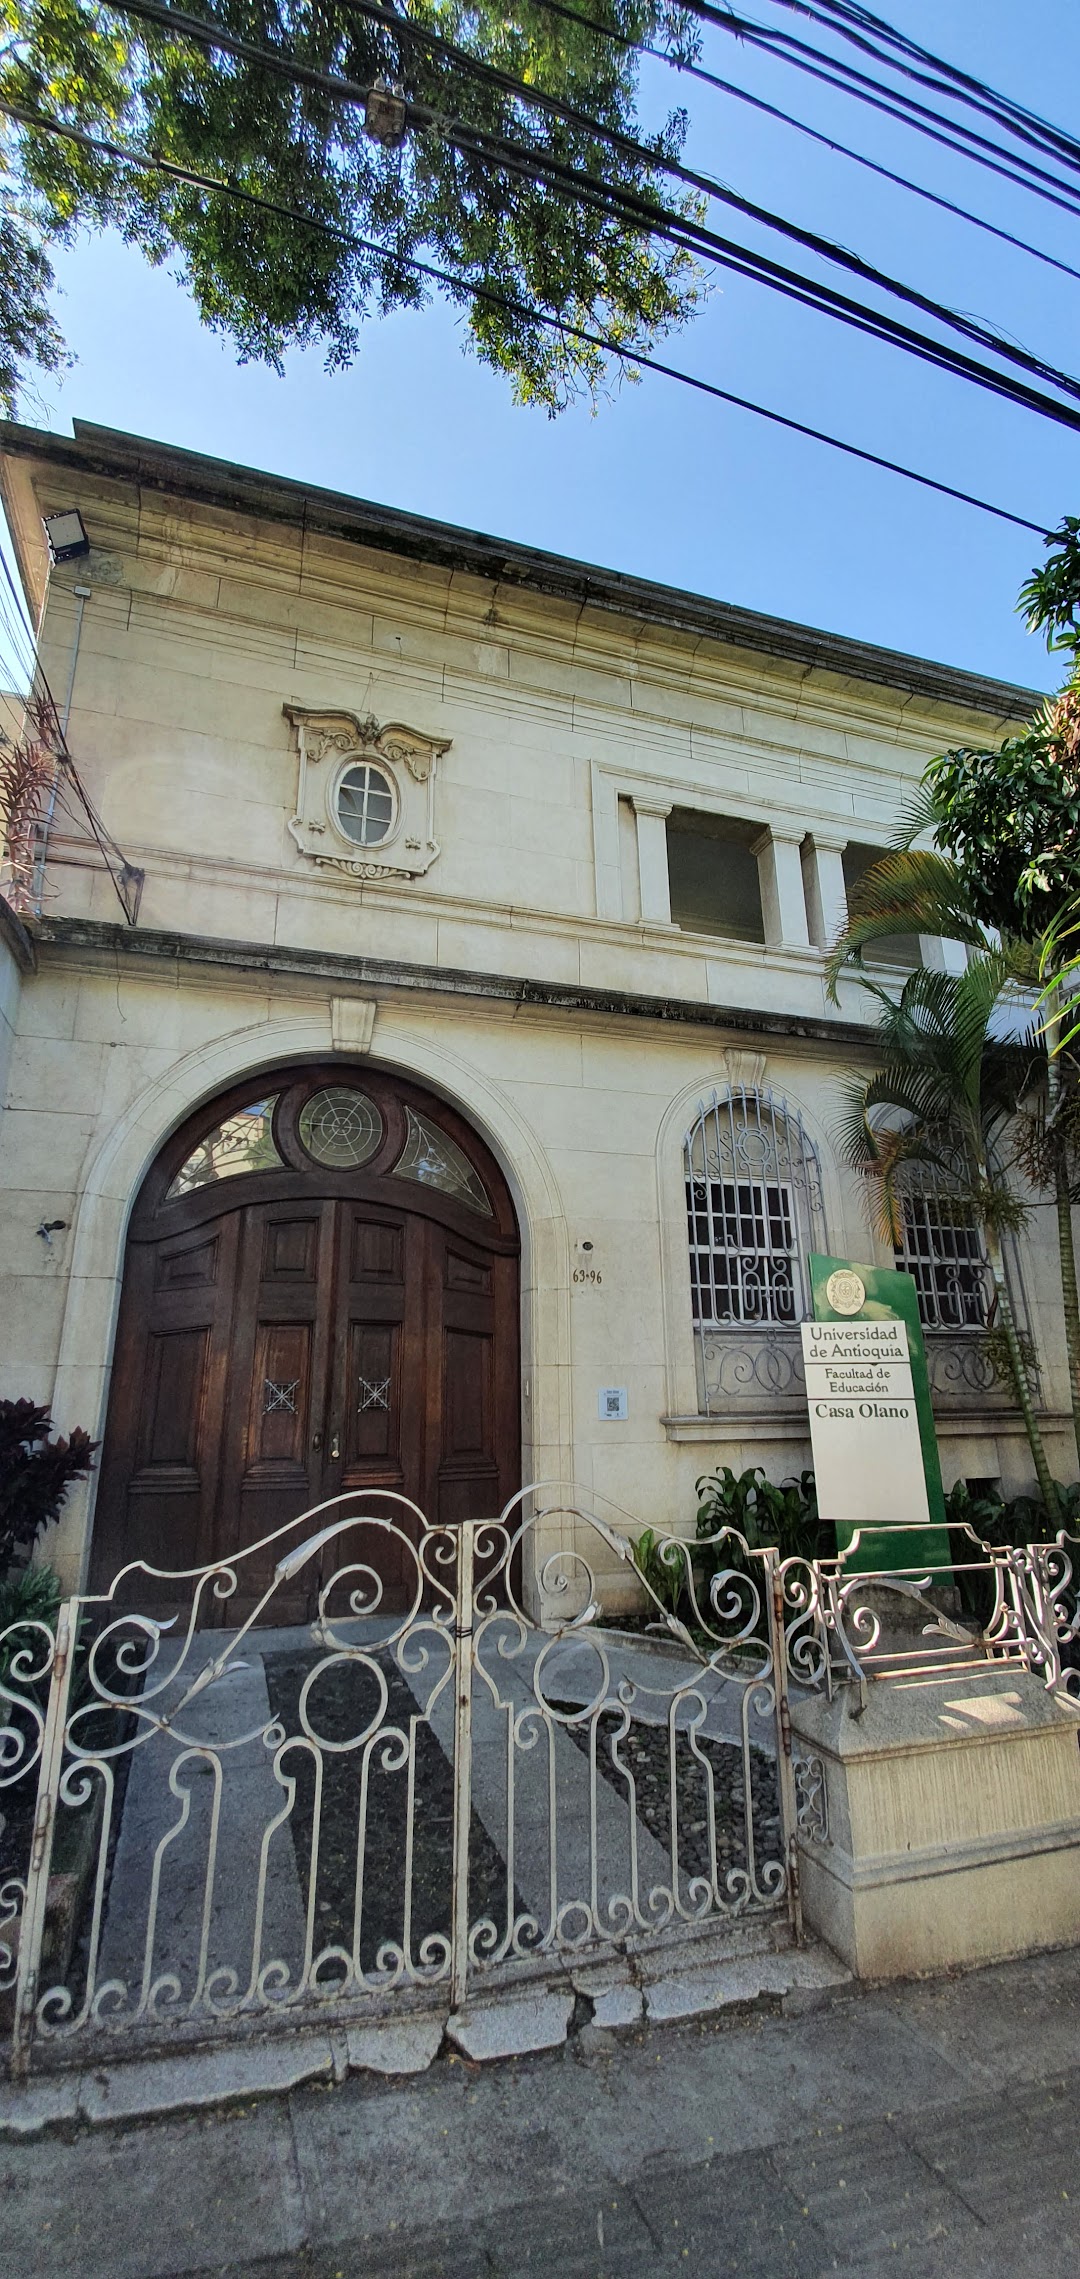 Universidad de Antioquia Casa Olano